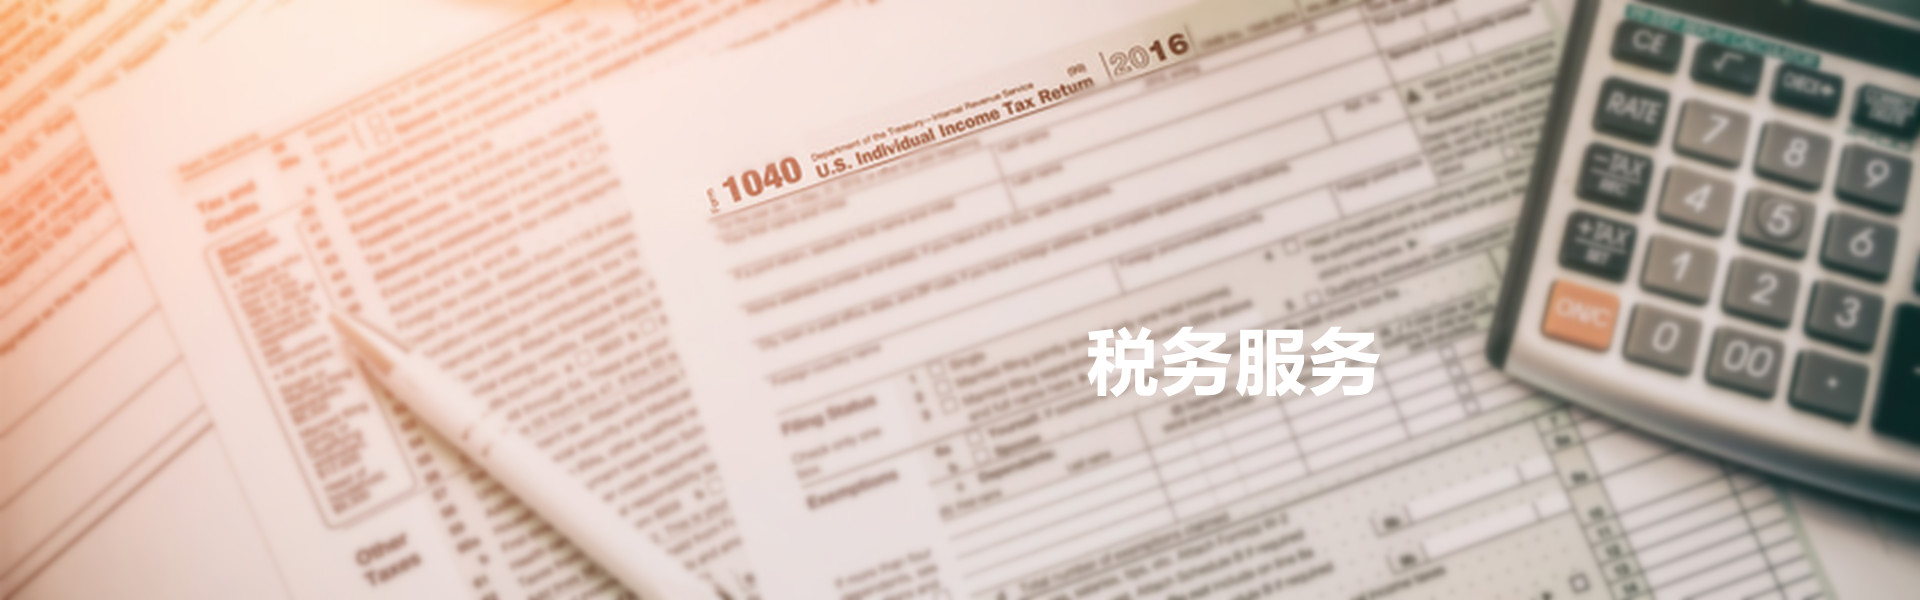 Tax Services-中文.jpg